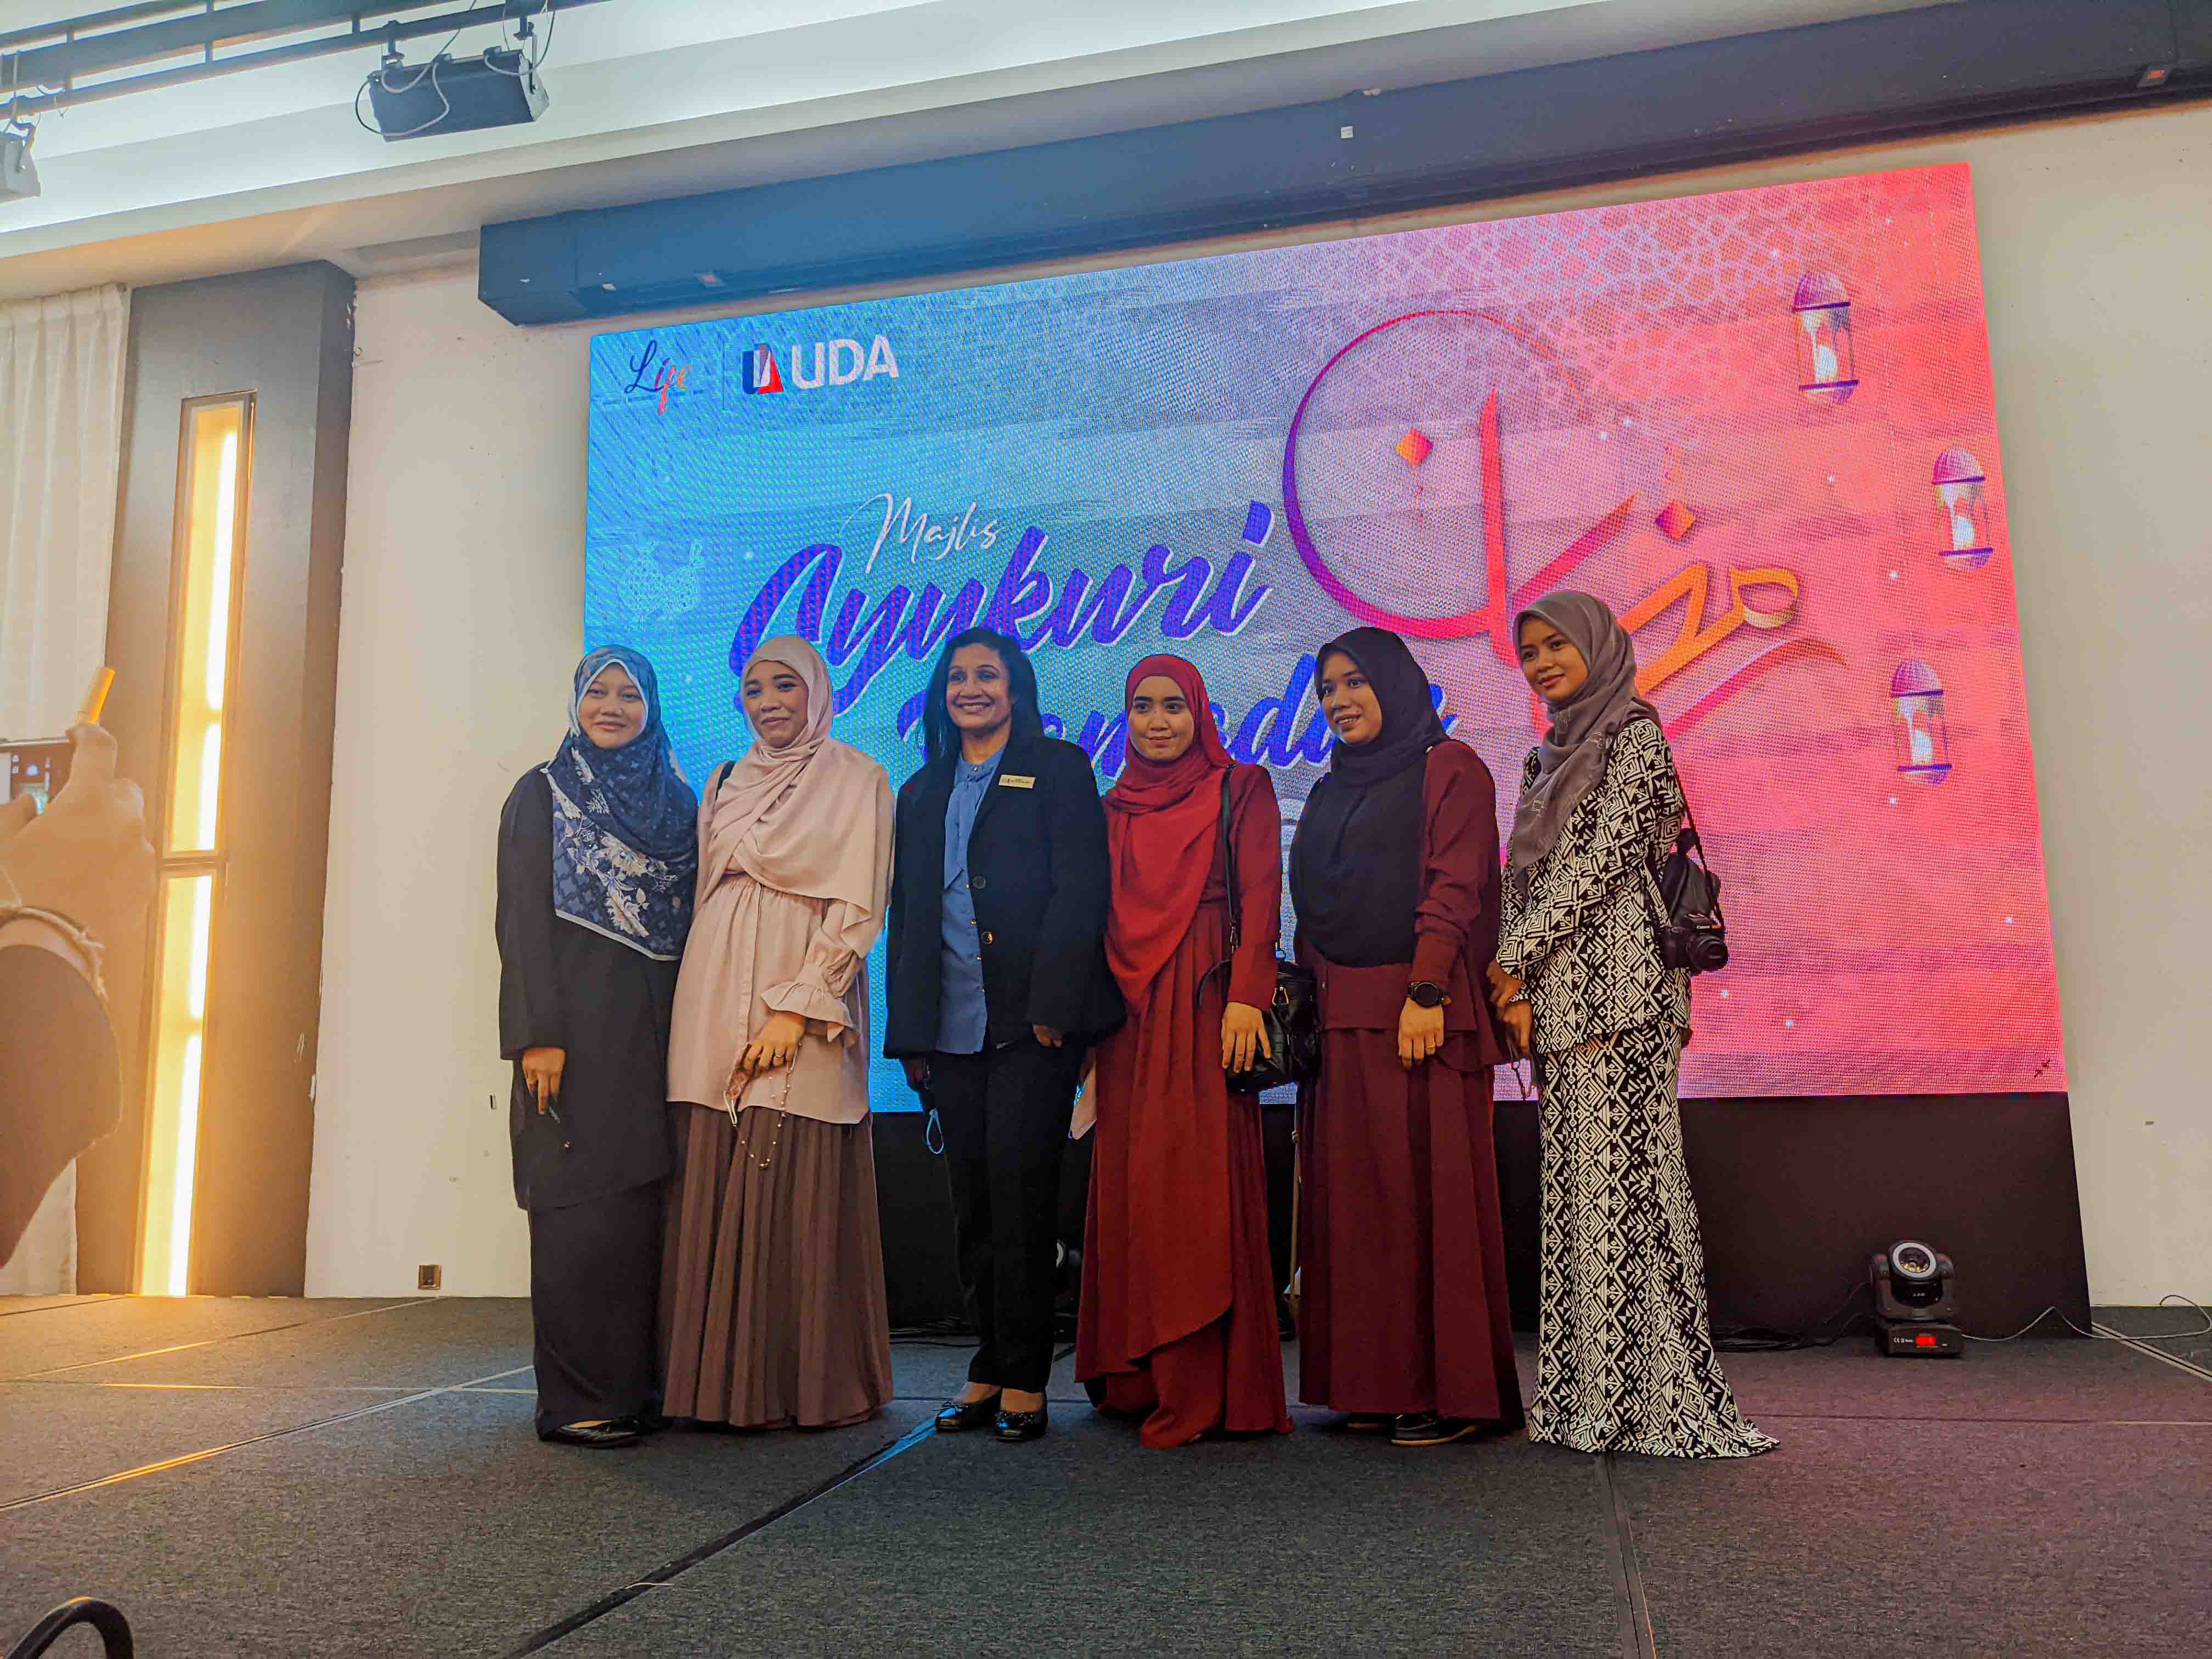 Majlis Syukuri Ramadan di Ancasa Royale Pekan, Pahang bersama Anak Yatim dan Asnaf